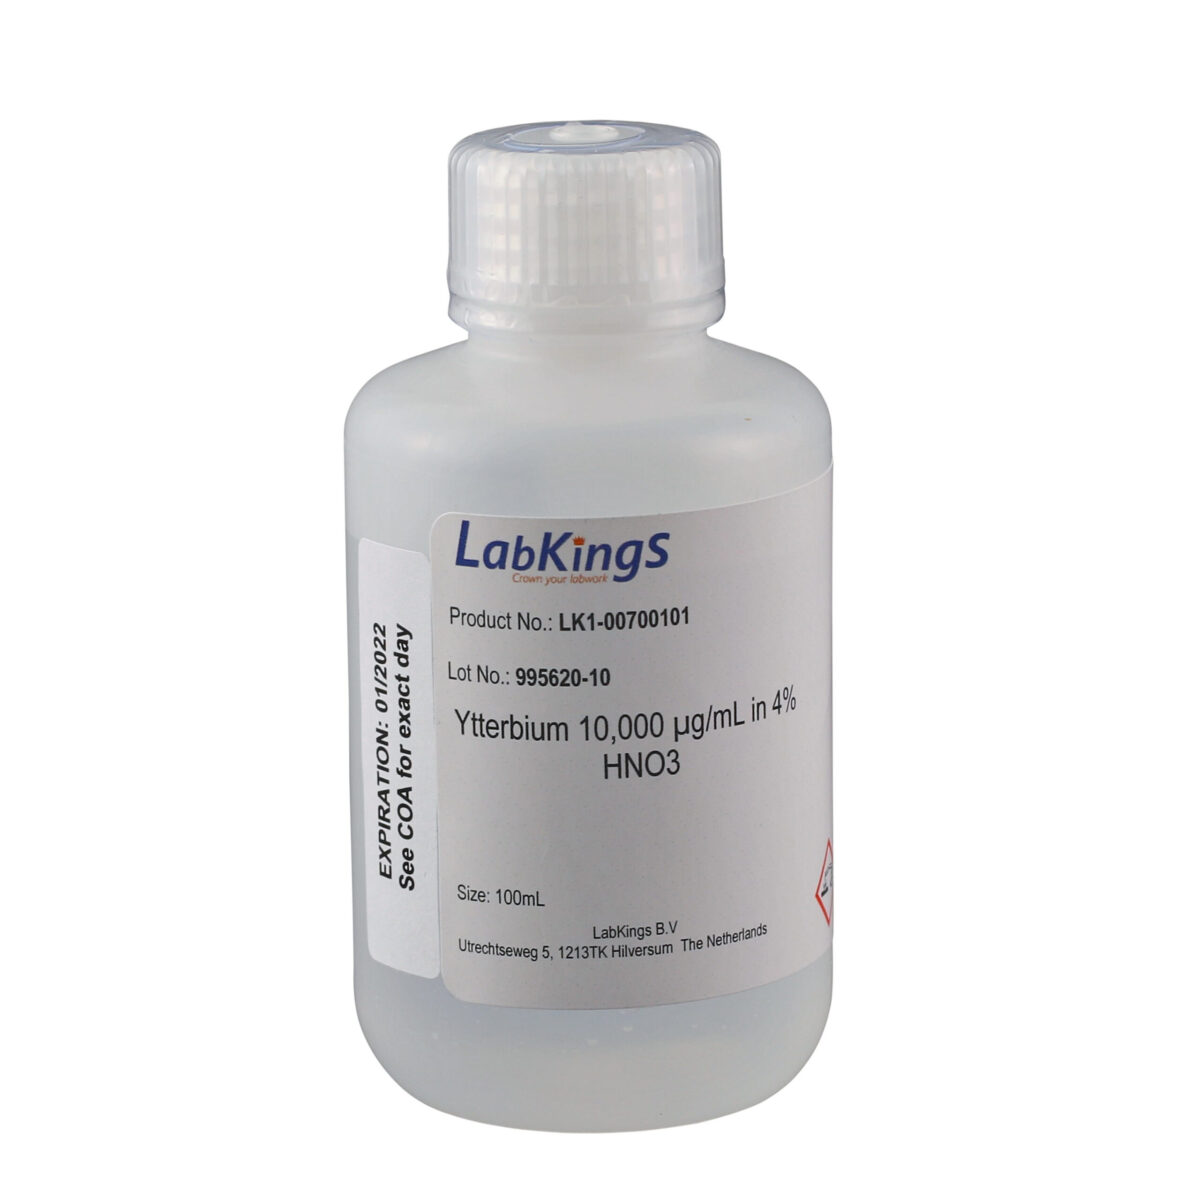 Ytterbium 10,000 mg/L (Yb2O3), 4% HNO3, 500ml